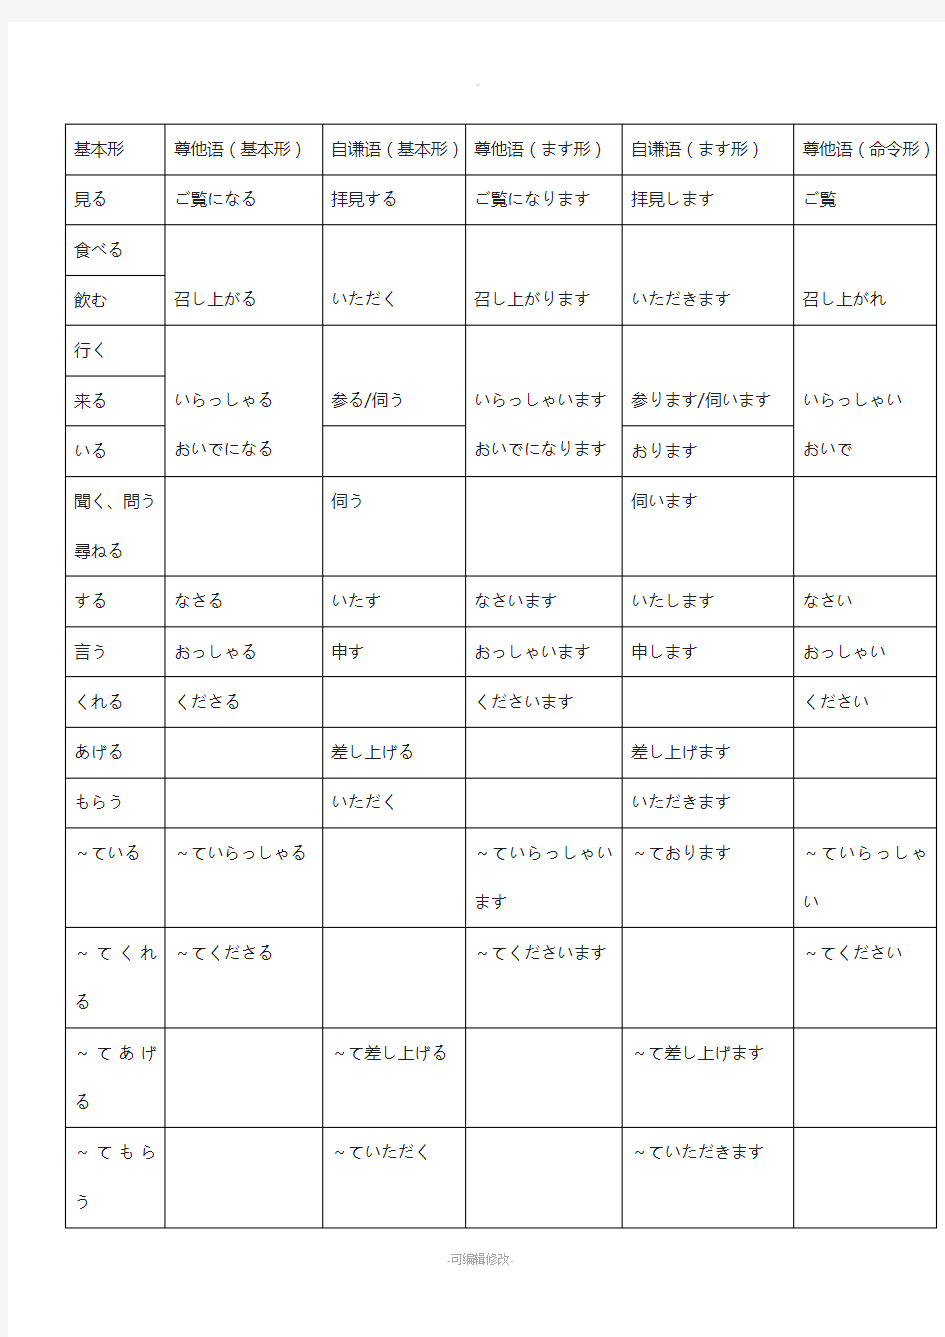 日语尊他语、自谦语表格整理